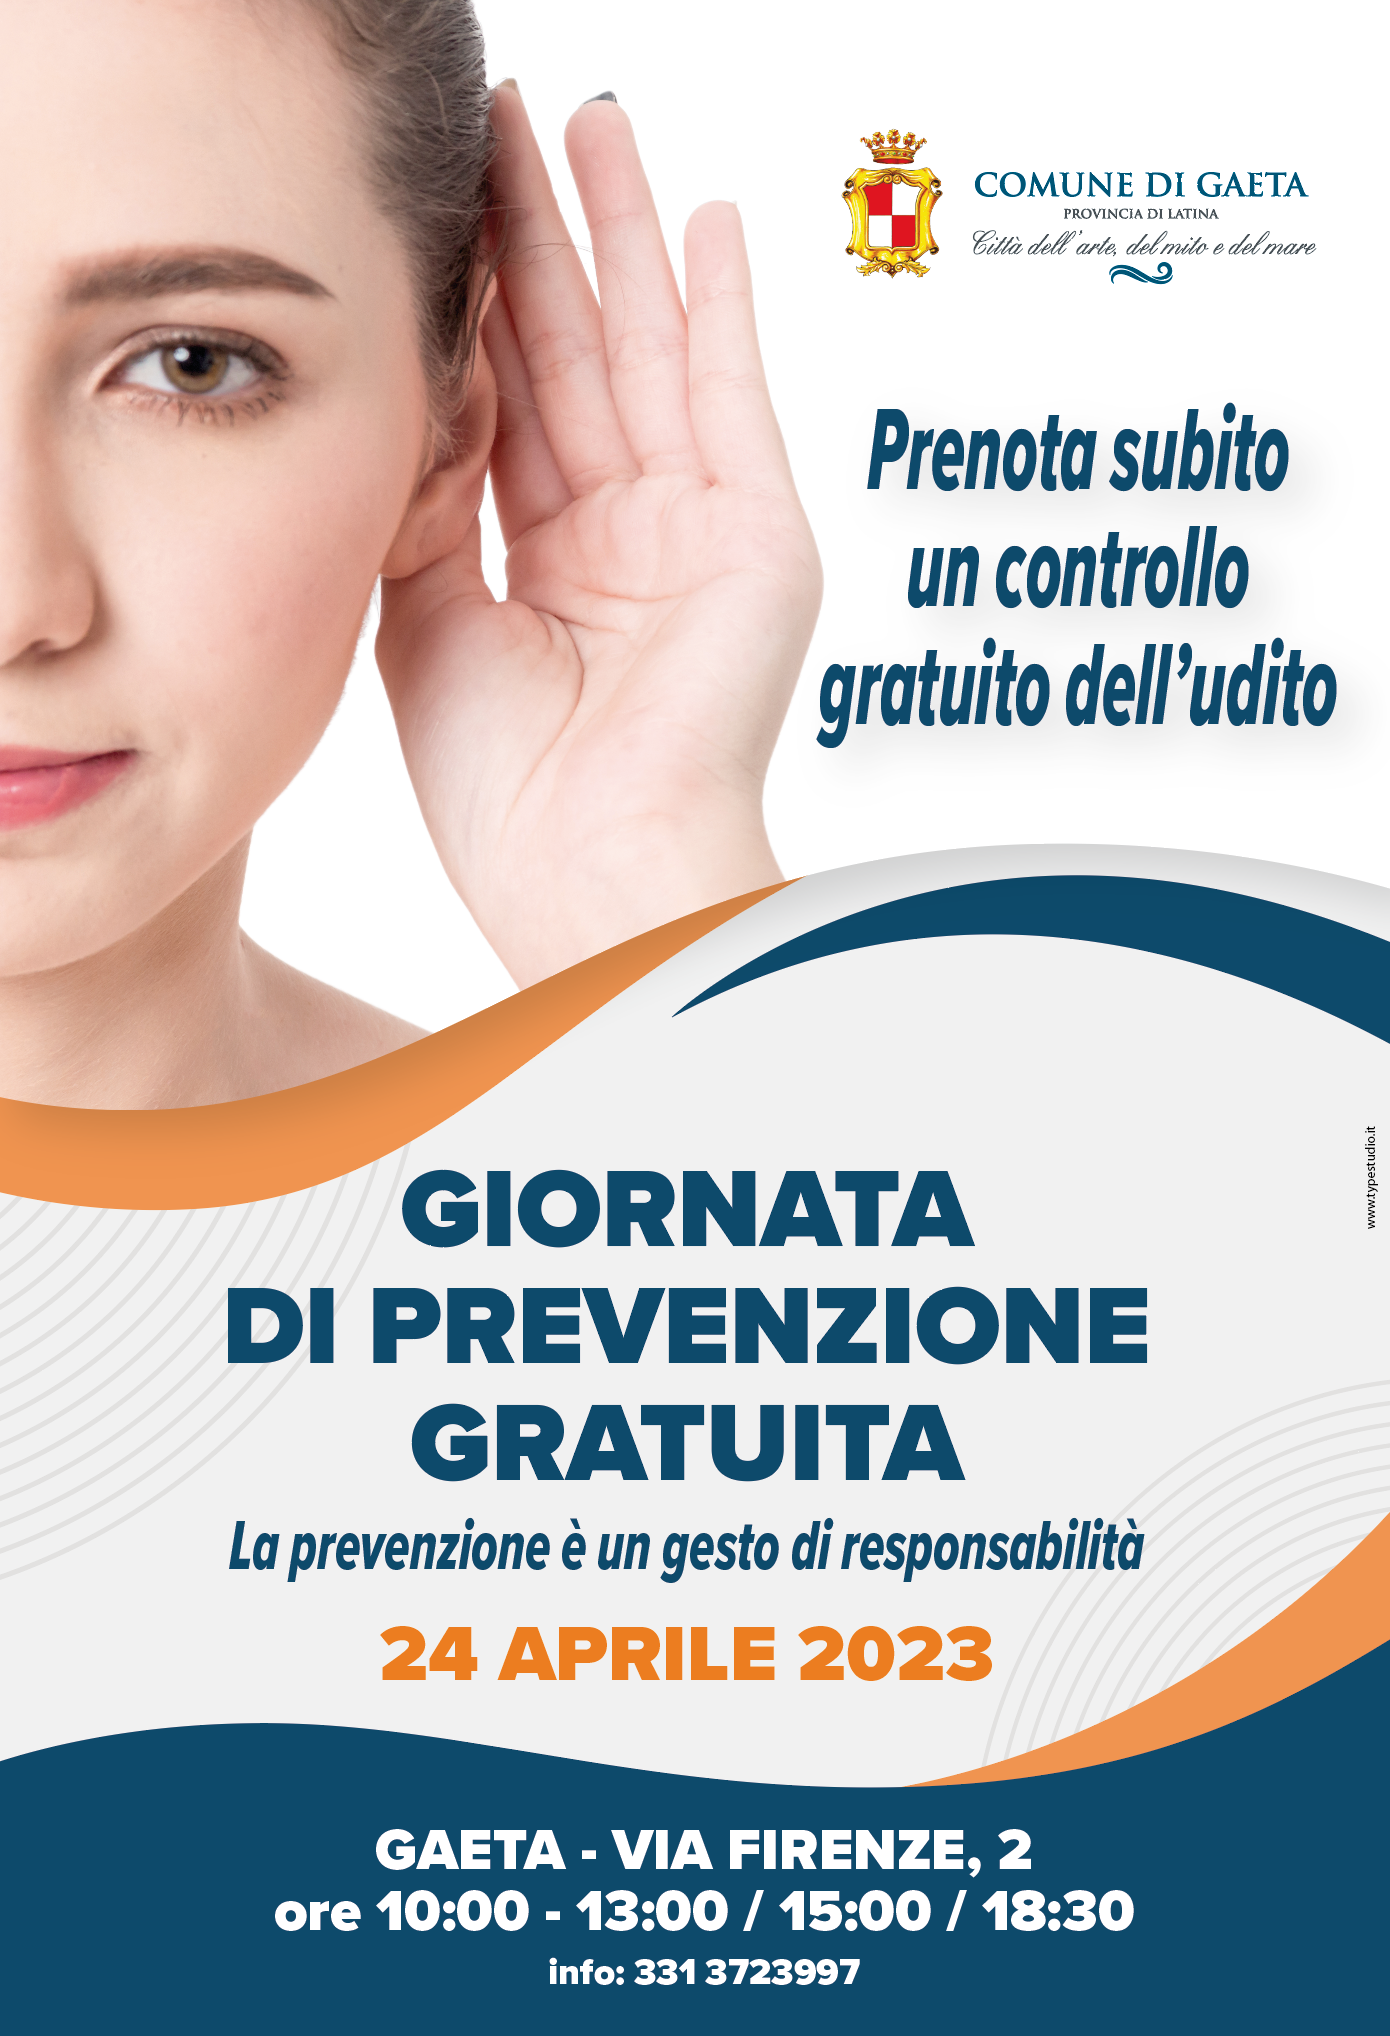 Giornata di prevenzione gratuita dell'udito, l'iniziativa promossa dal Comune di Gaeta.